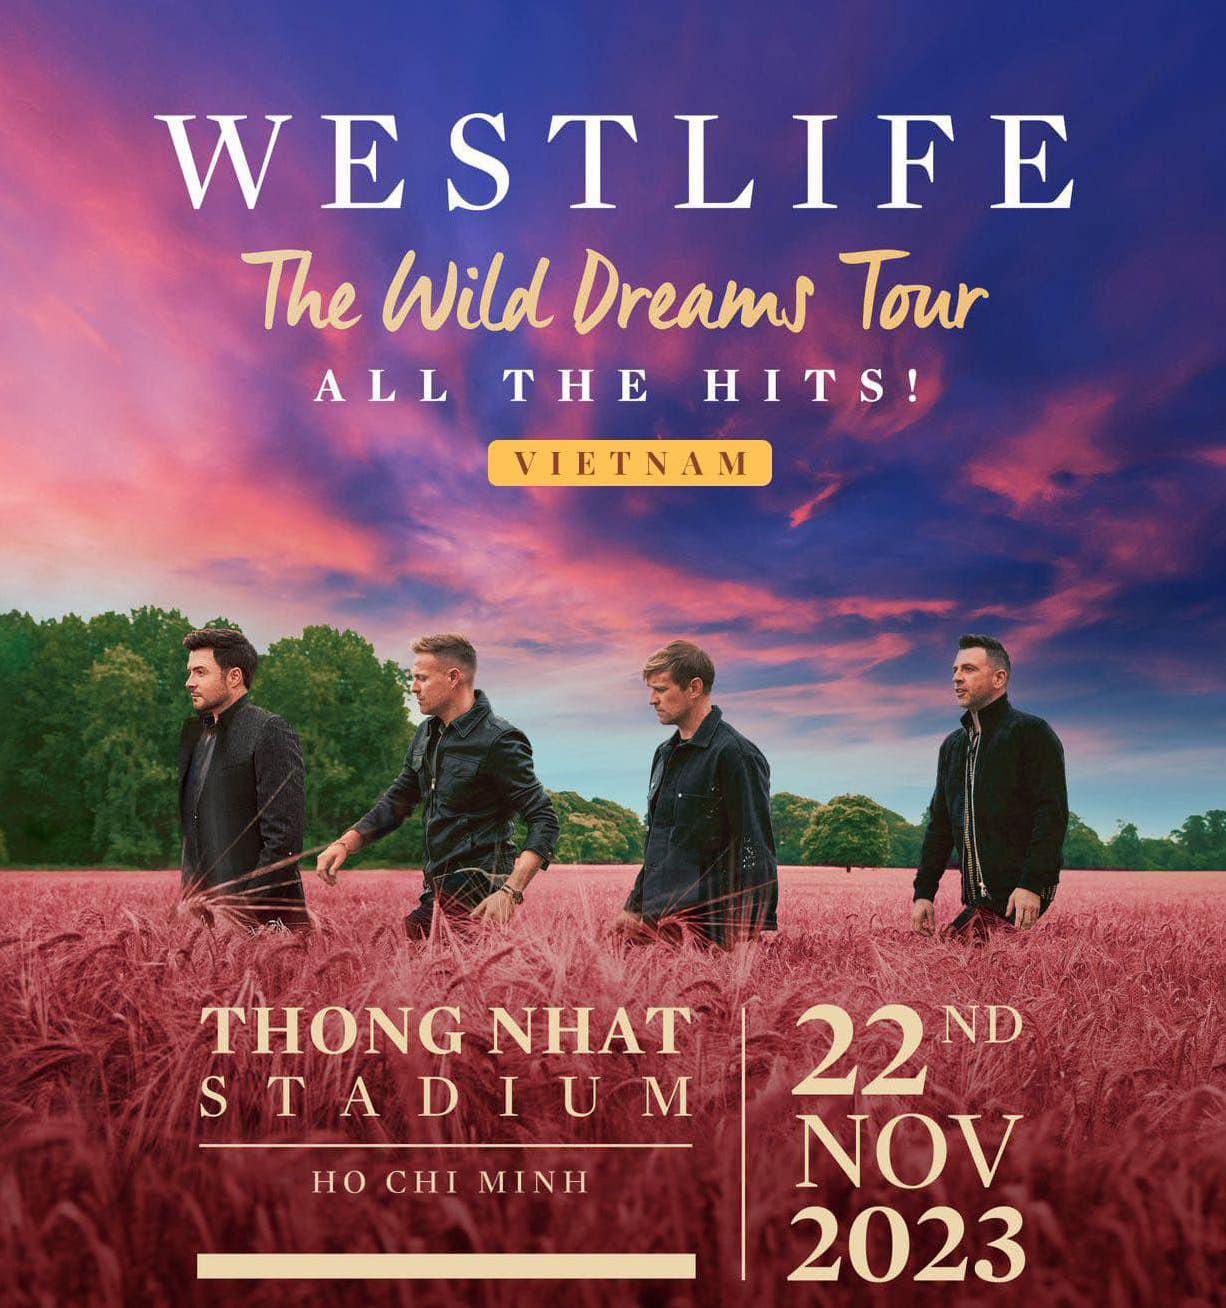 Hình ảnh từ poster buổi hòa nhạc của ban nhạc Westlife tại Việt Nam ngày 22/11 - Ảnh: Westlife Fanpage